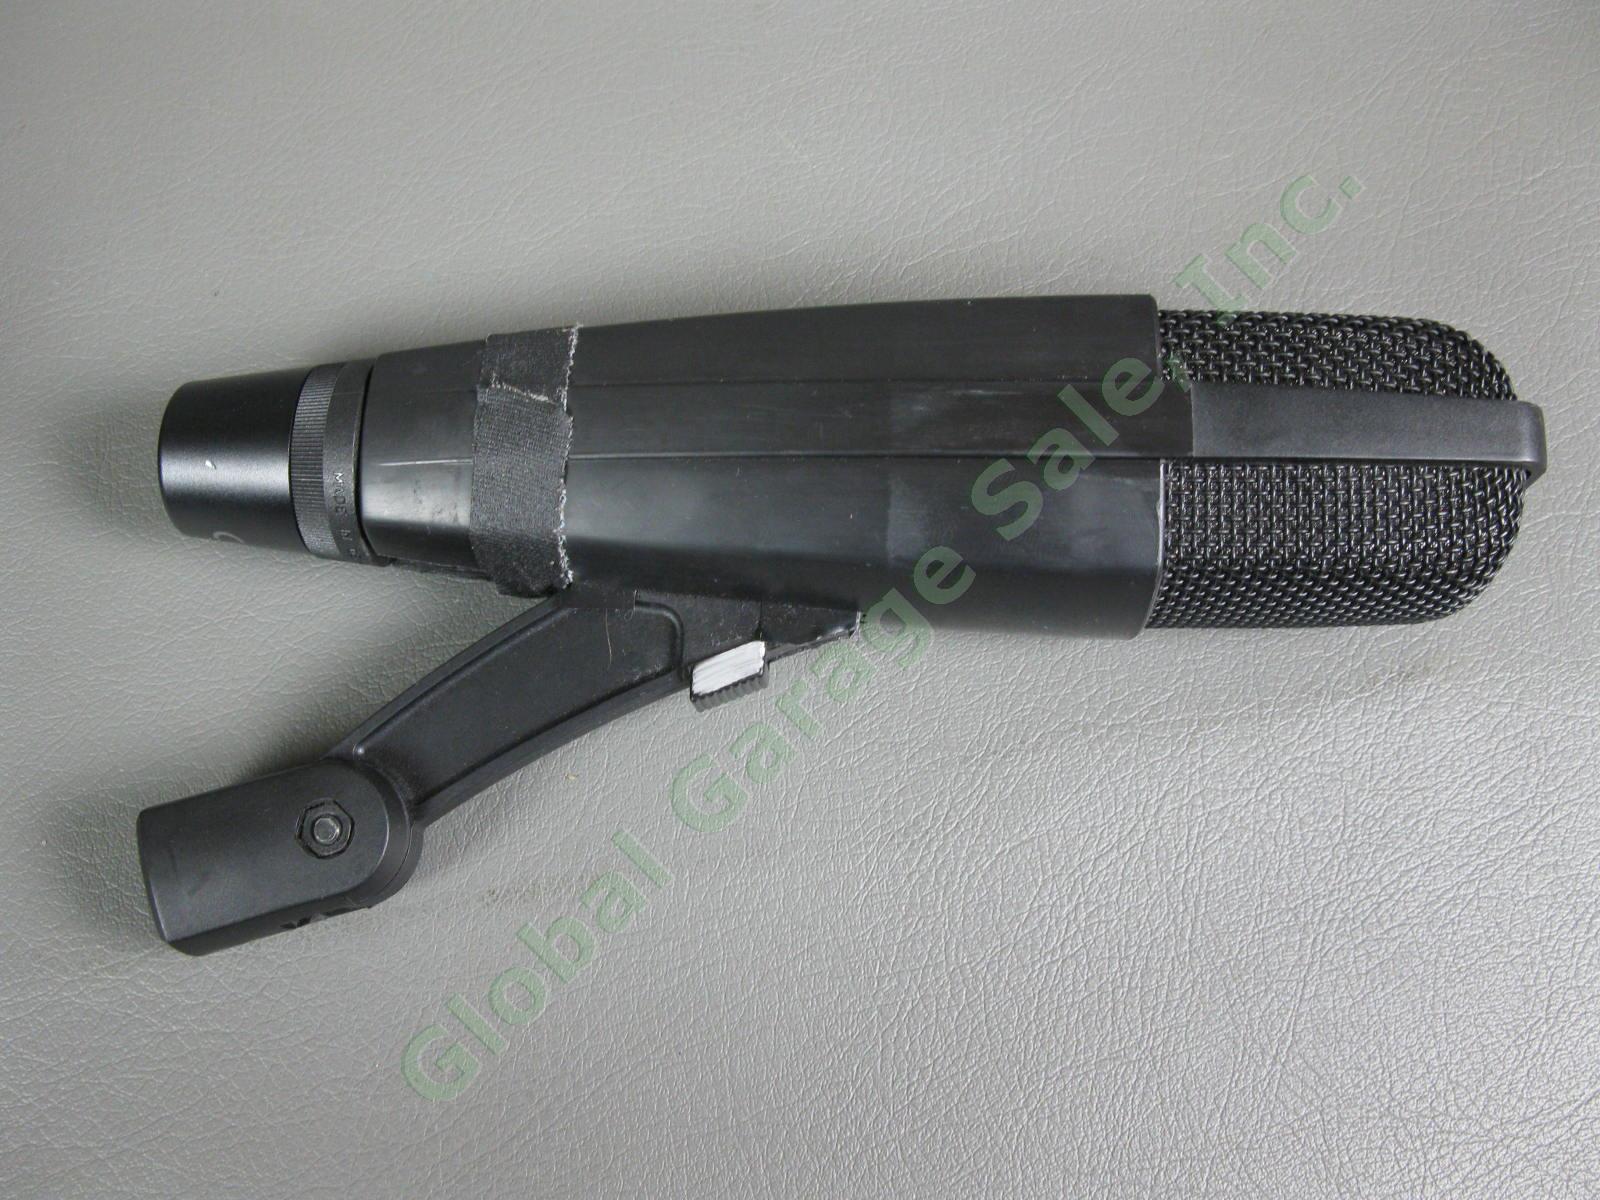 Sennheiser MD 421 II Dynamic Cardioid Professional Microphone Black Pro Mic NR 3